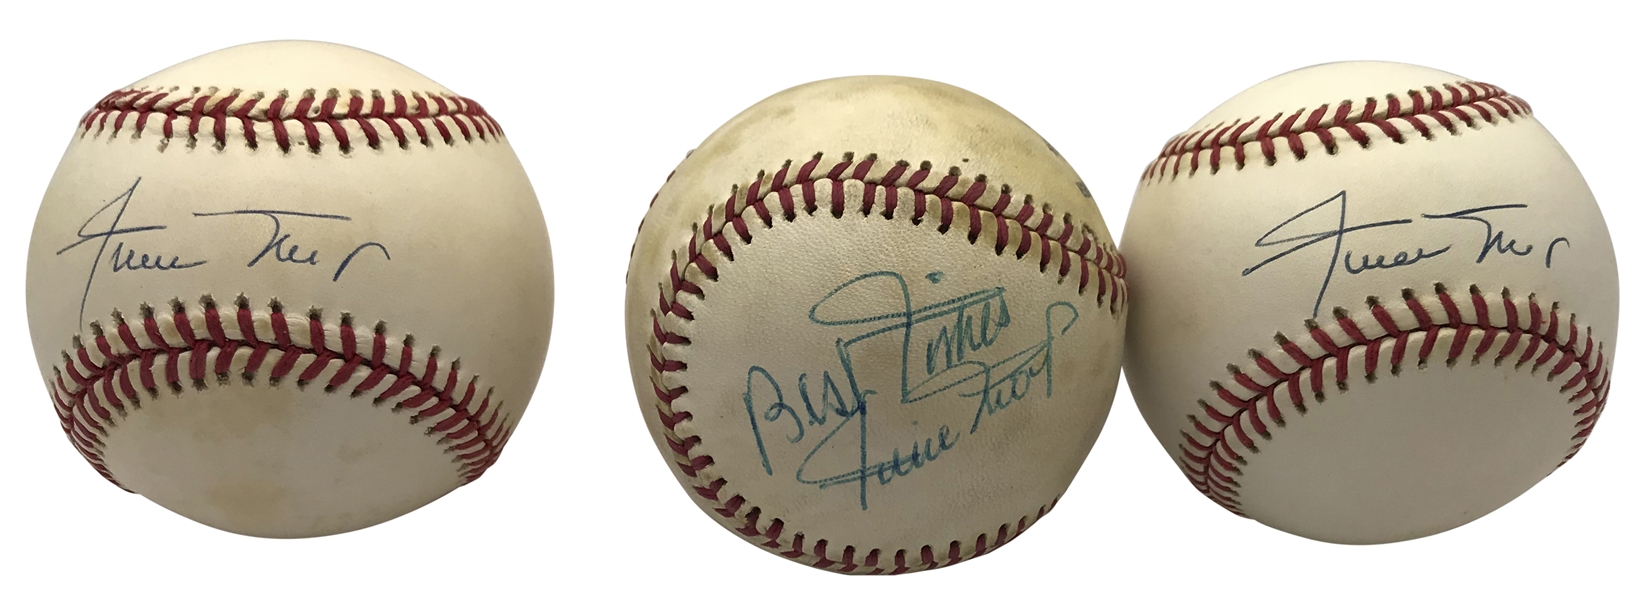 Lot of Three (3) Willie Mays Single Signed Baseballs (Beckett/BAS Guaranteed)